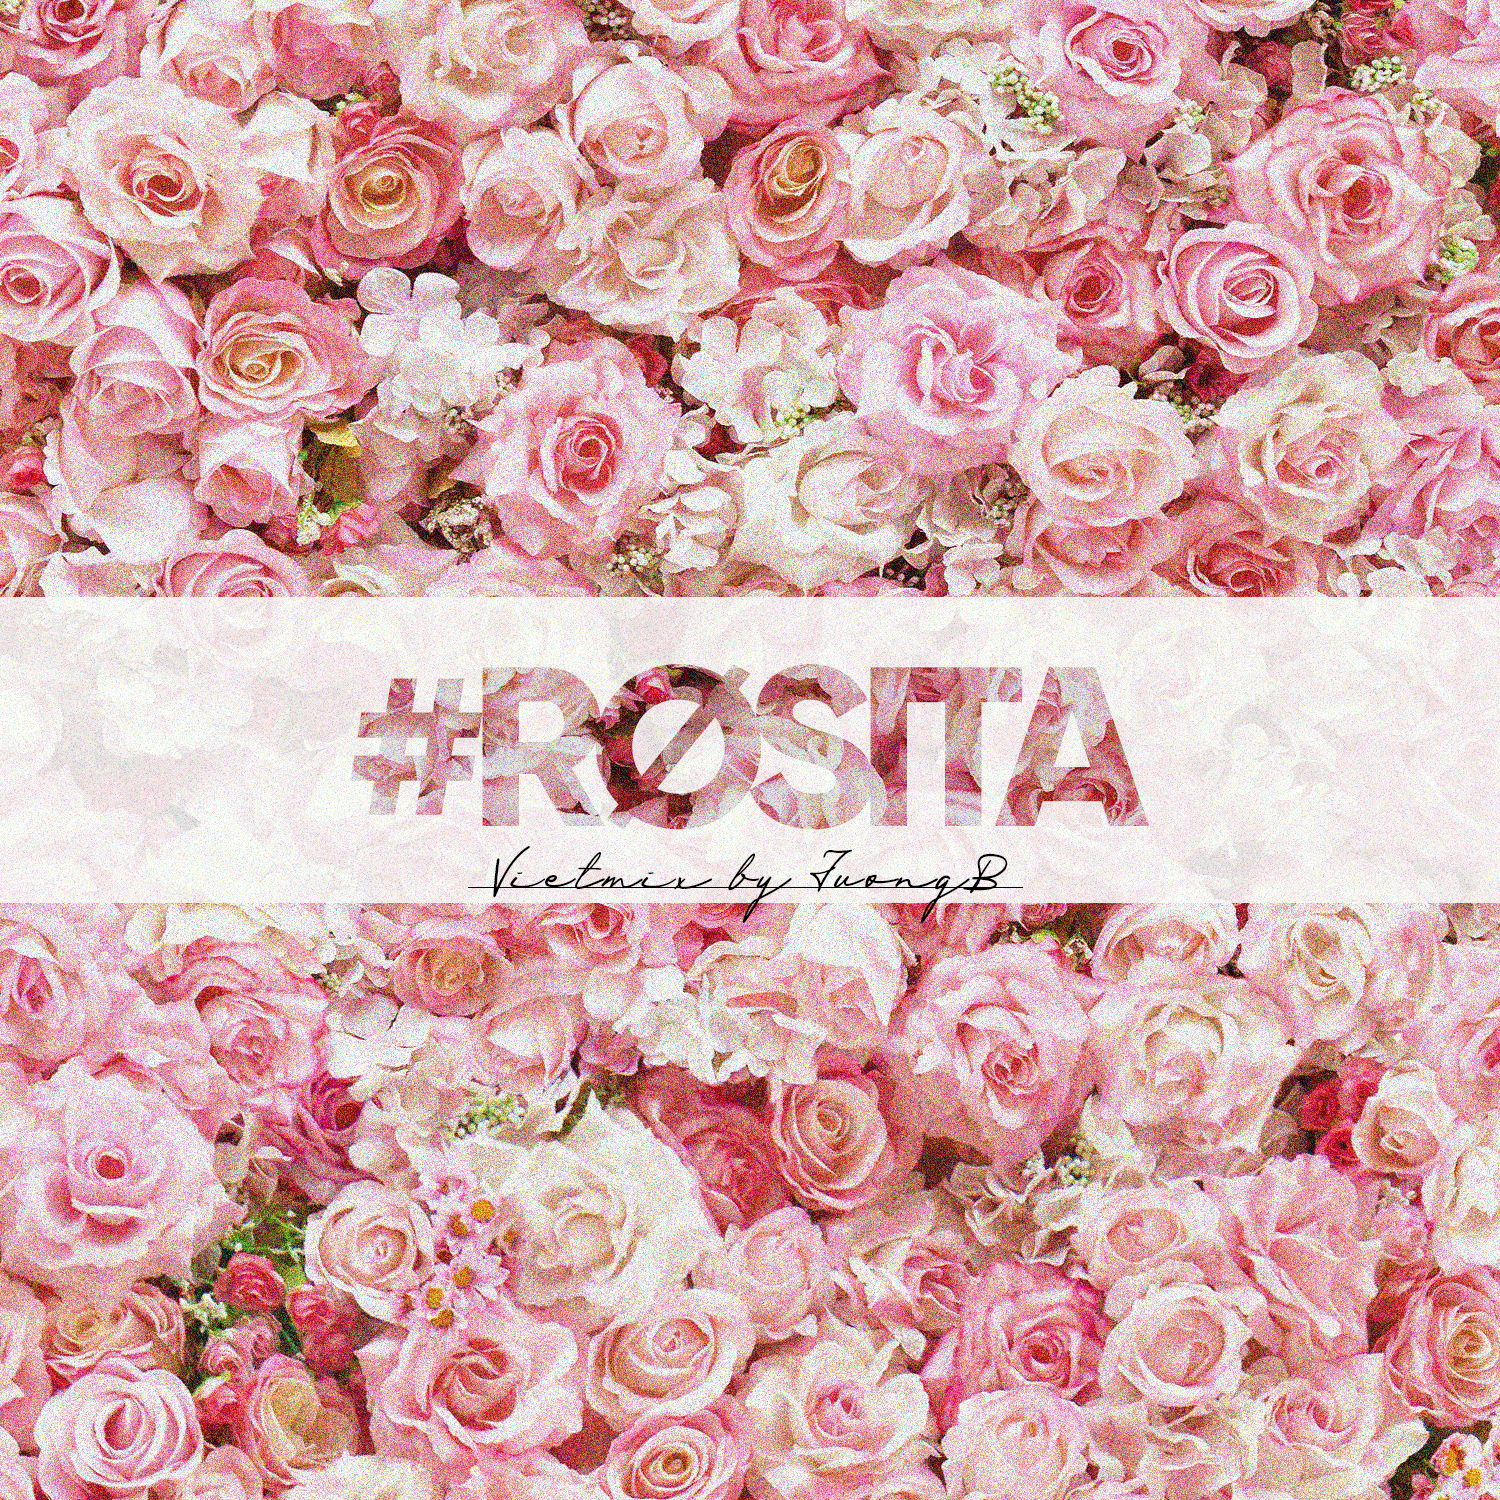 డౌన్లోడ్ #Rosita - Vietmix By JuongB